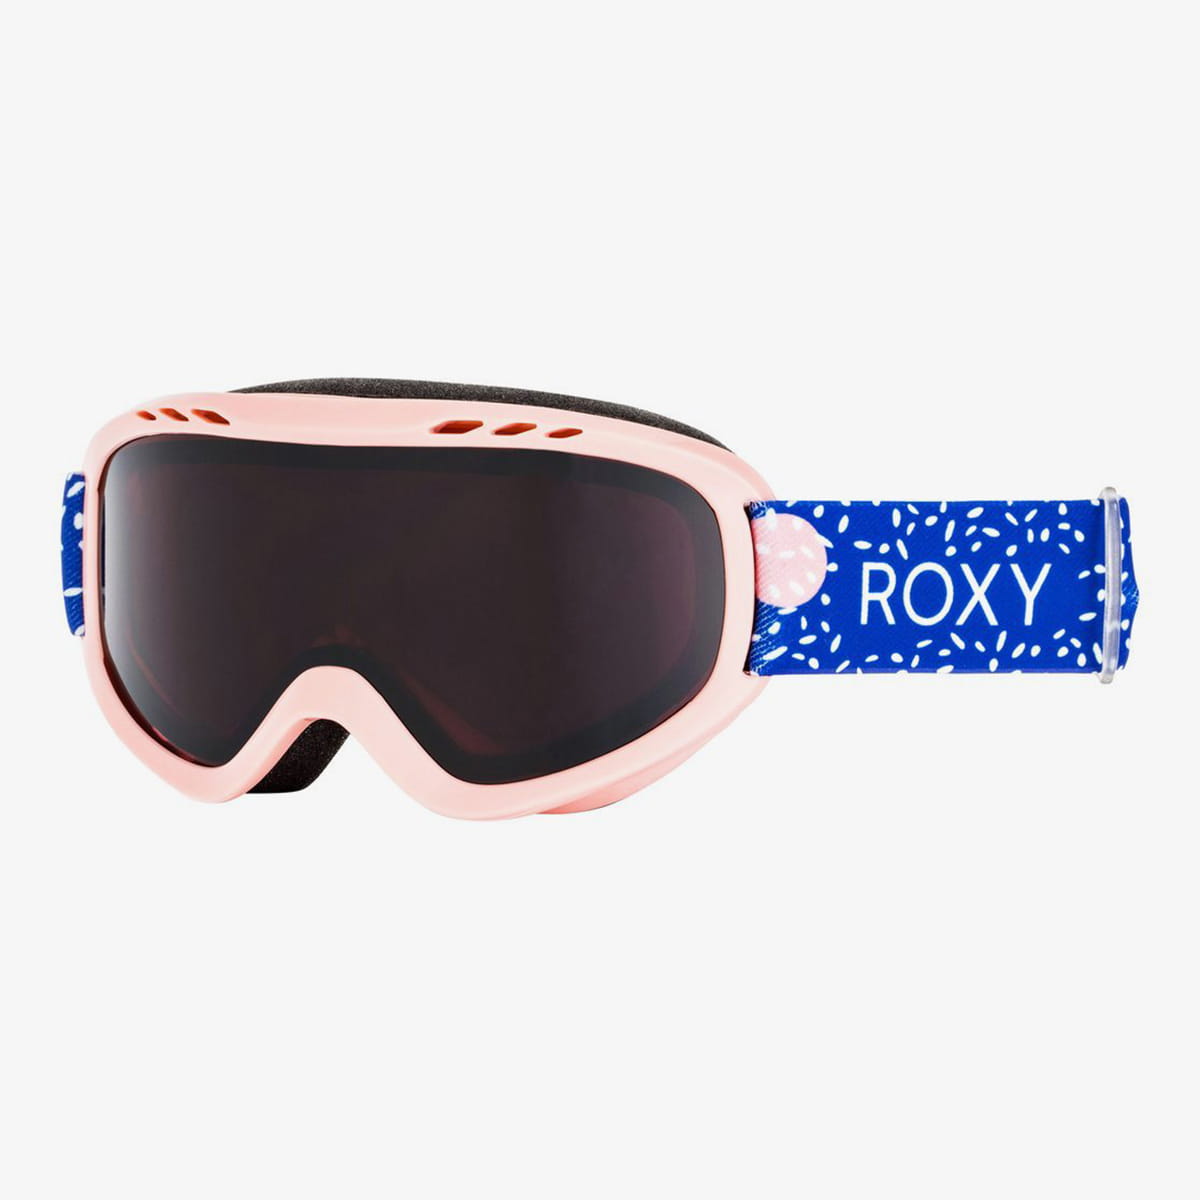 Мужские маски и линзы roxy. Детская маска Roxy. Сноубордическая маска Roxy розовая. Roxy Mint Goggles. Blue Roxy 7ds.